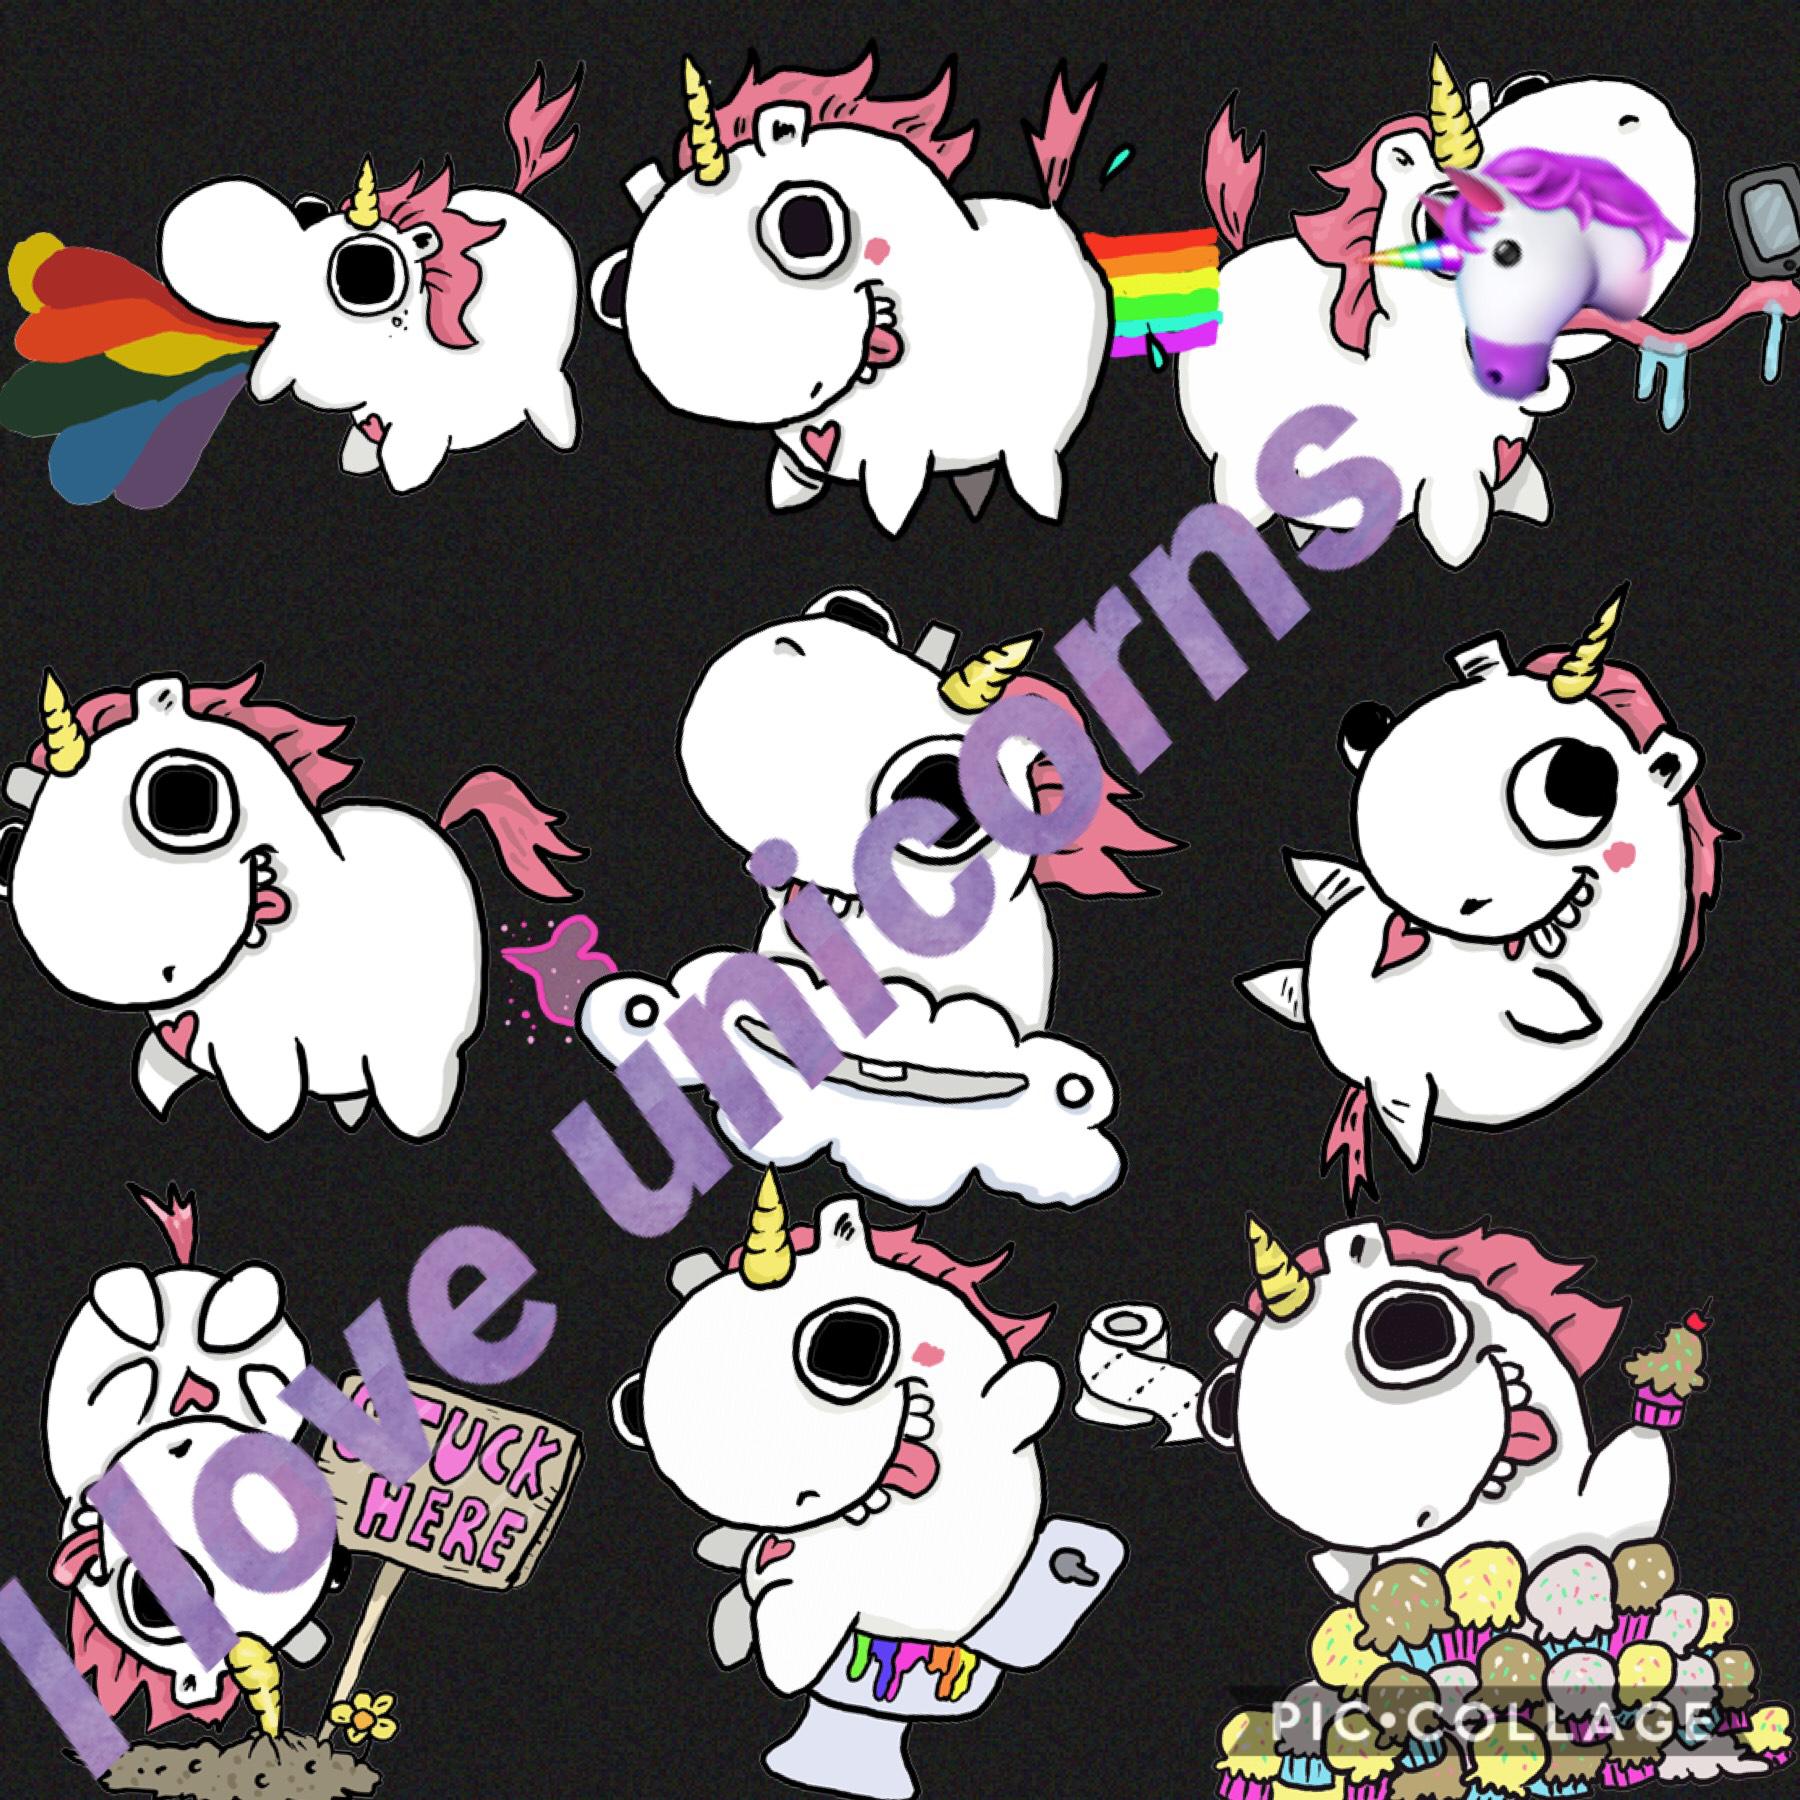 #unicorn squad